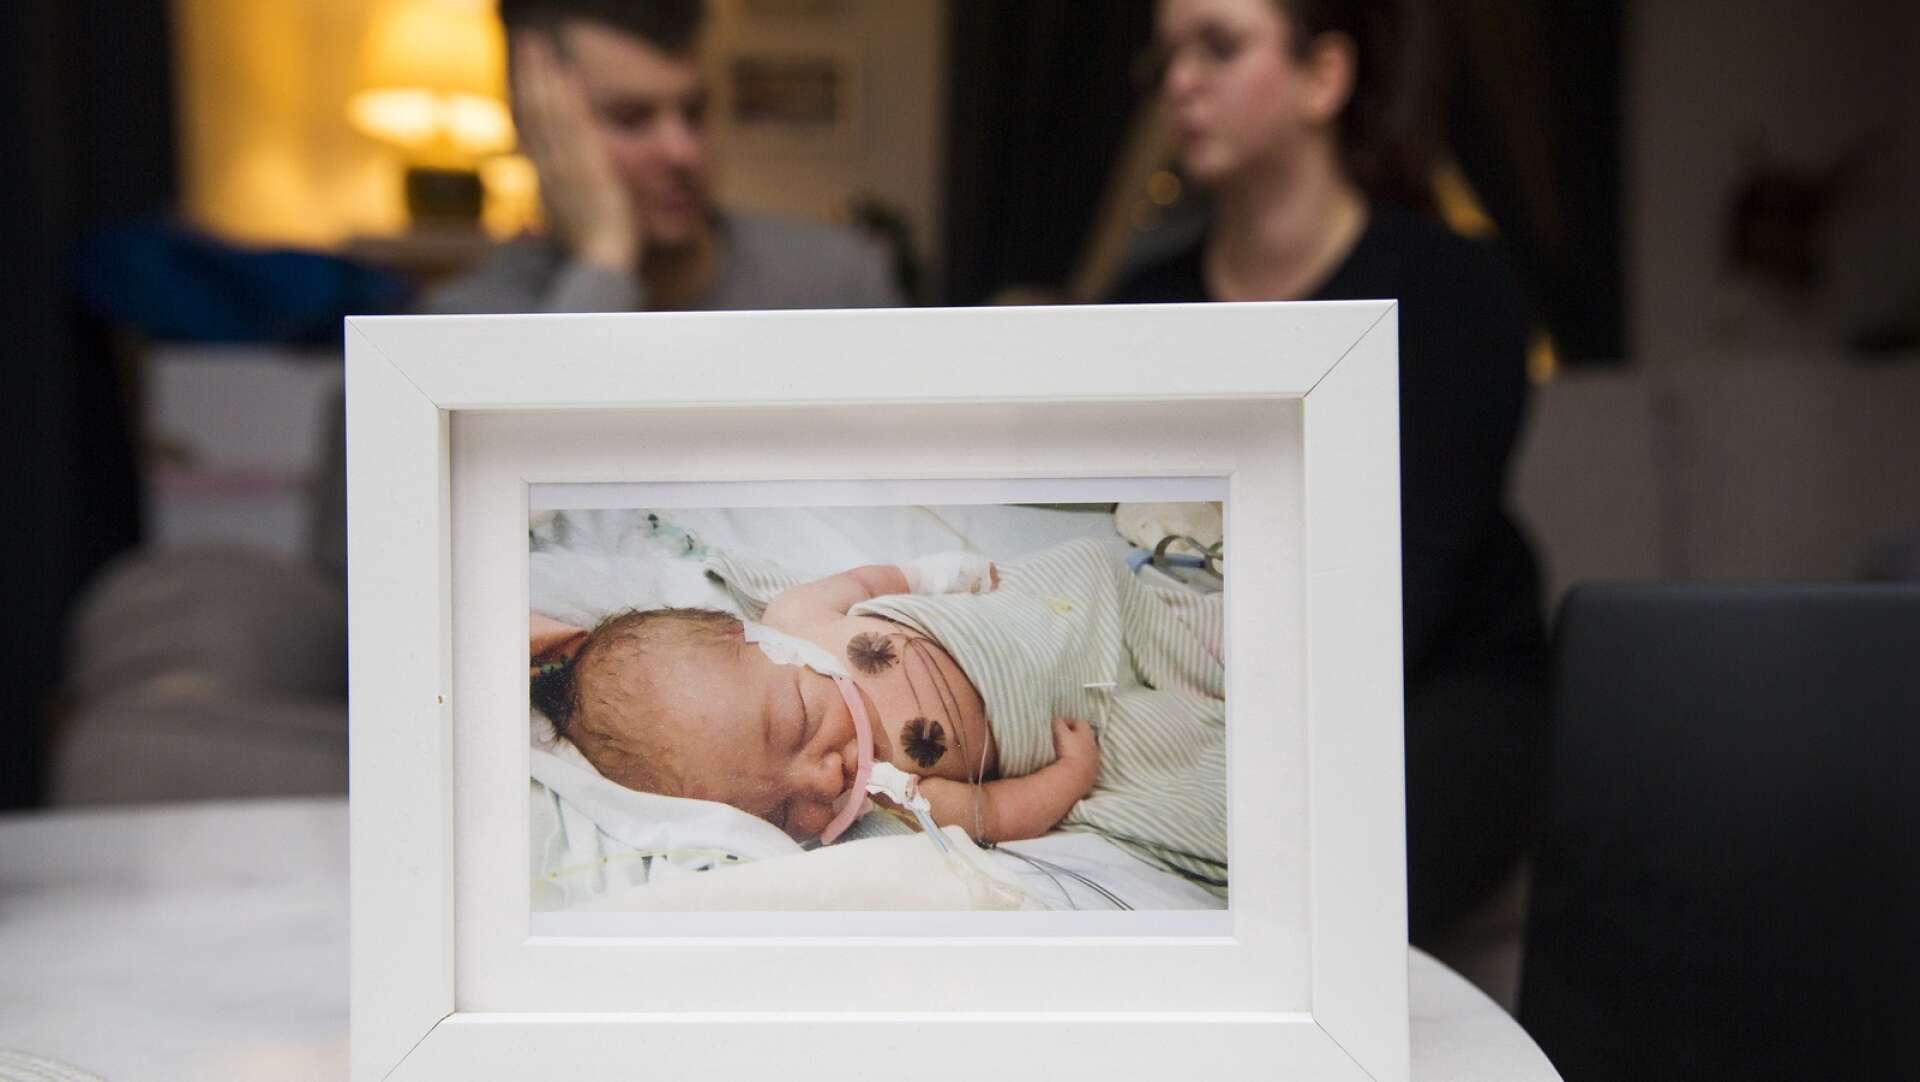 Om åklagaren väckt åtal hade det kunnat förändra synen på spädbarnsdöd, tror Tove Spånberg. 